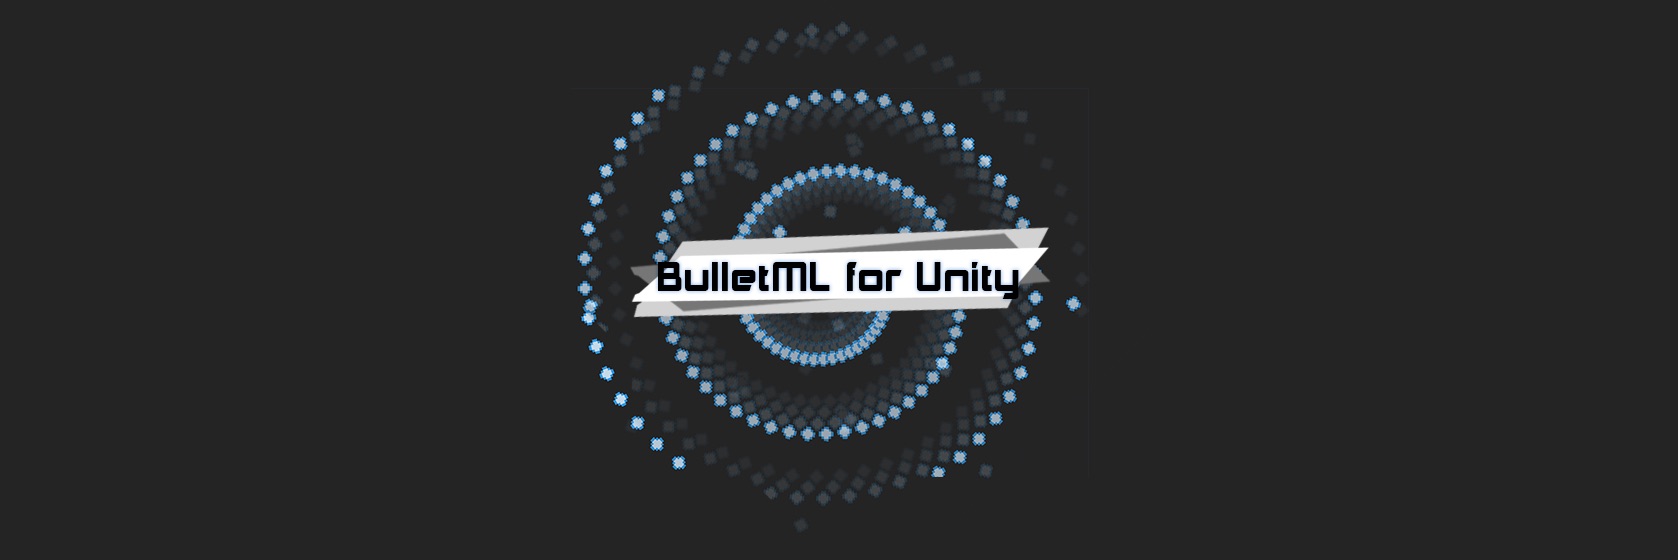 BulletML For Unity